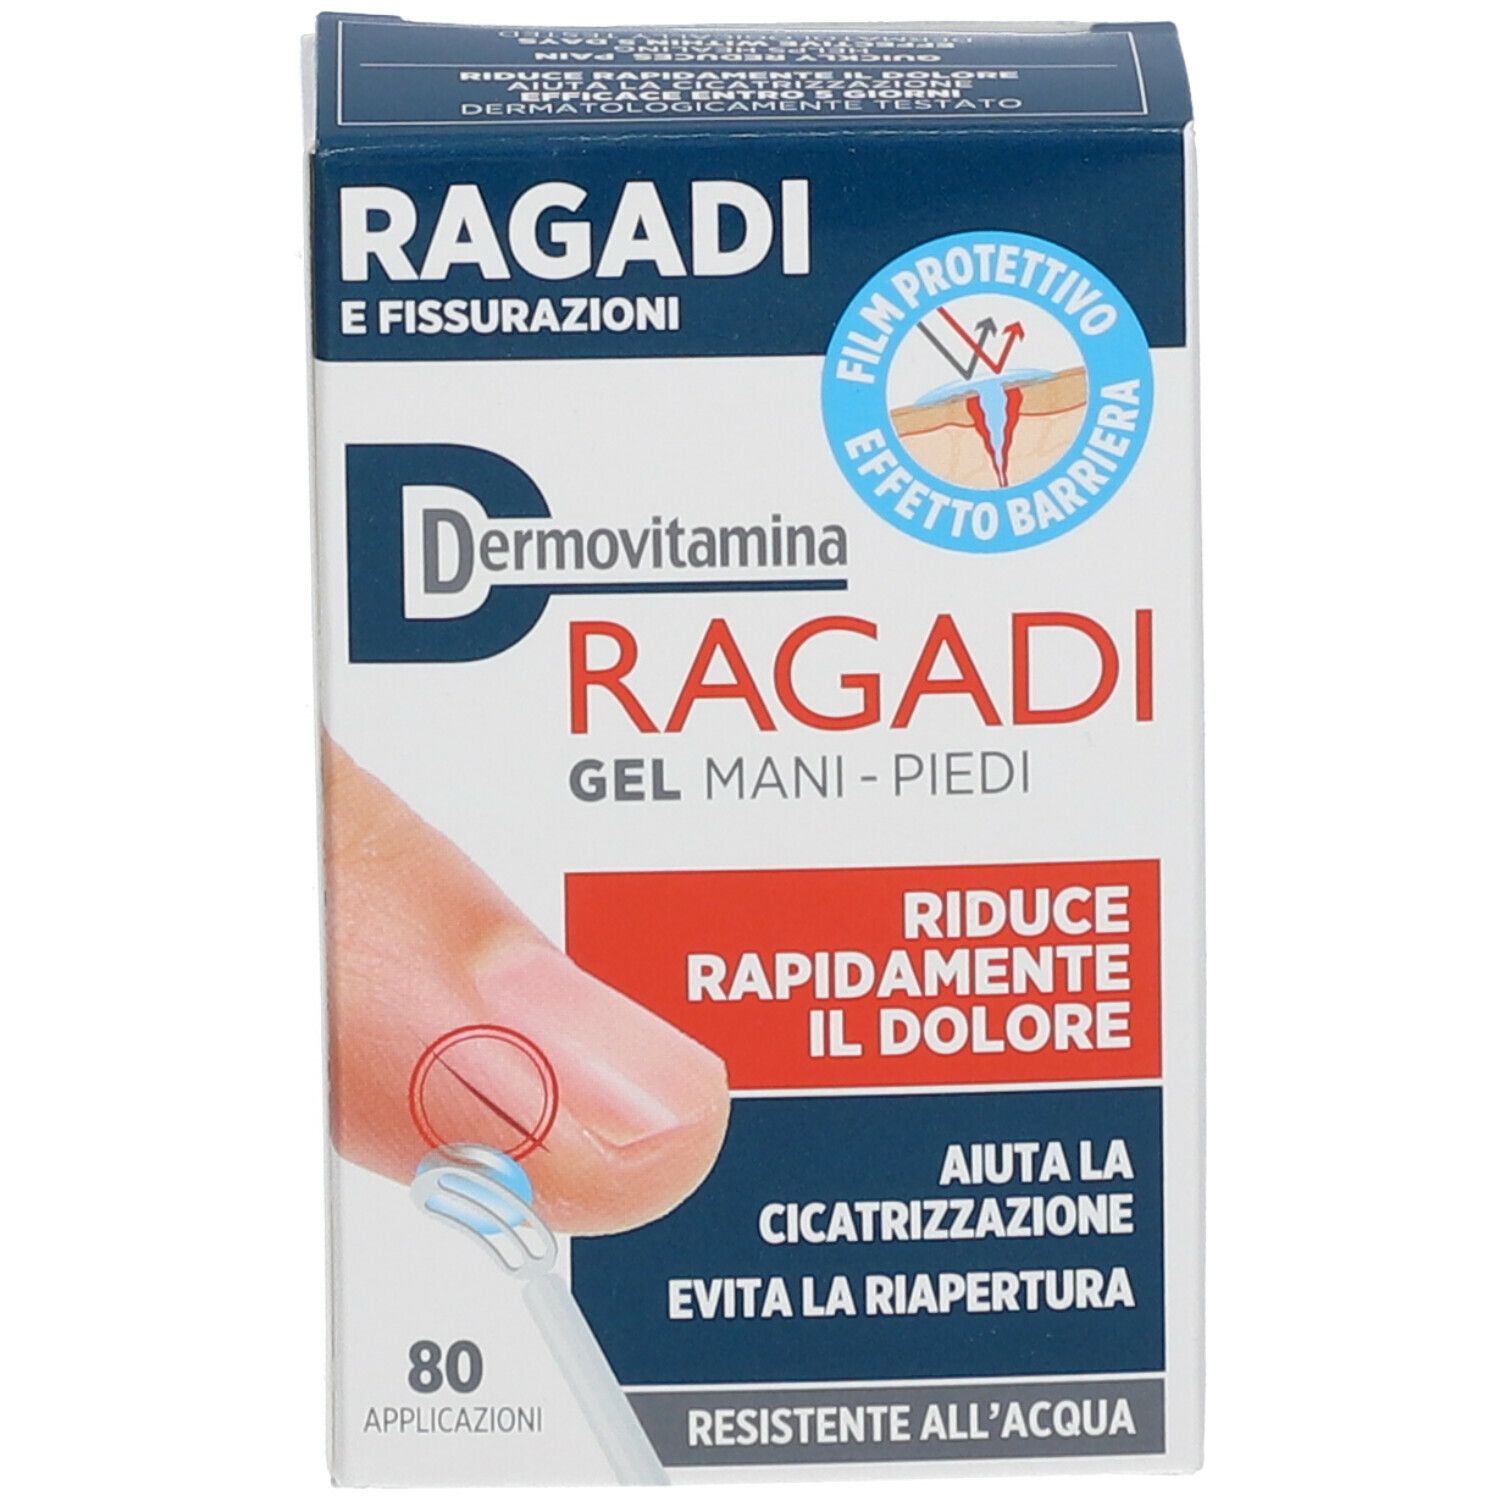 Dermovitamina Ragadi Mani-Piedi 7 ml